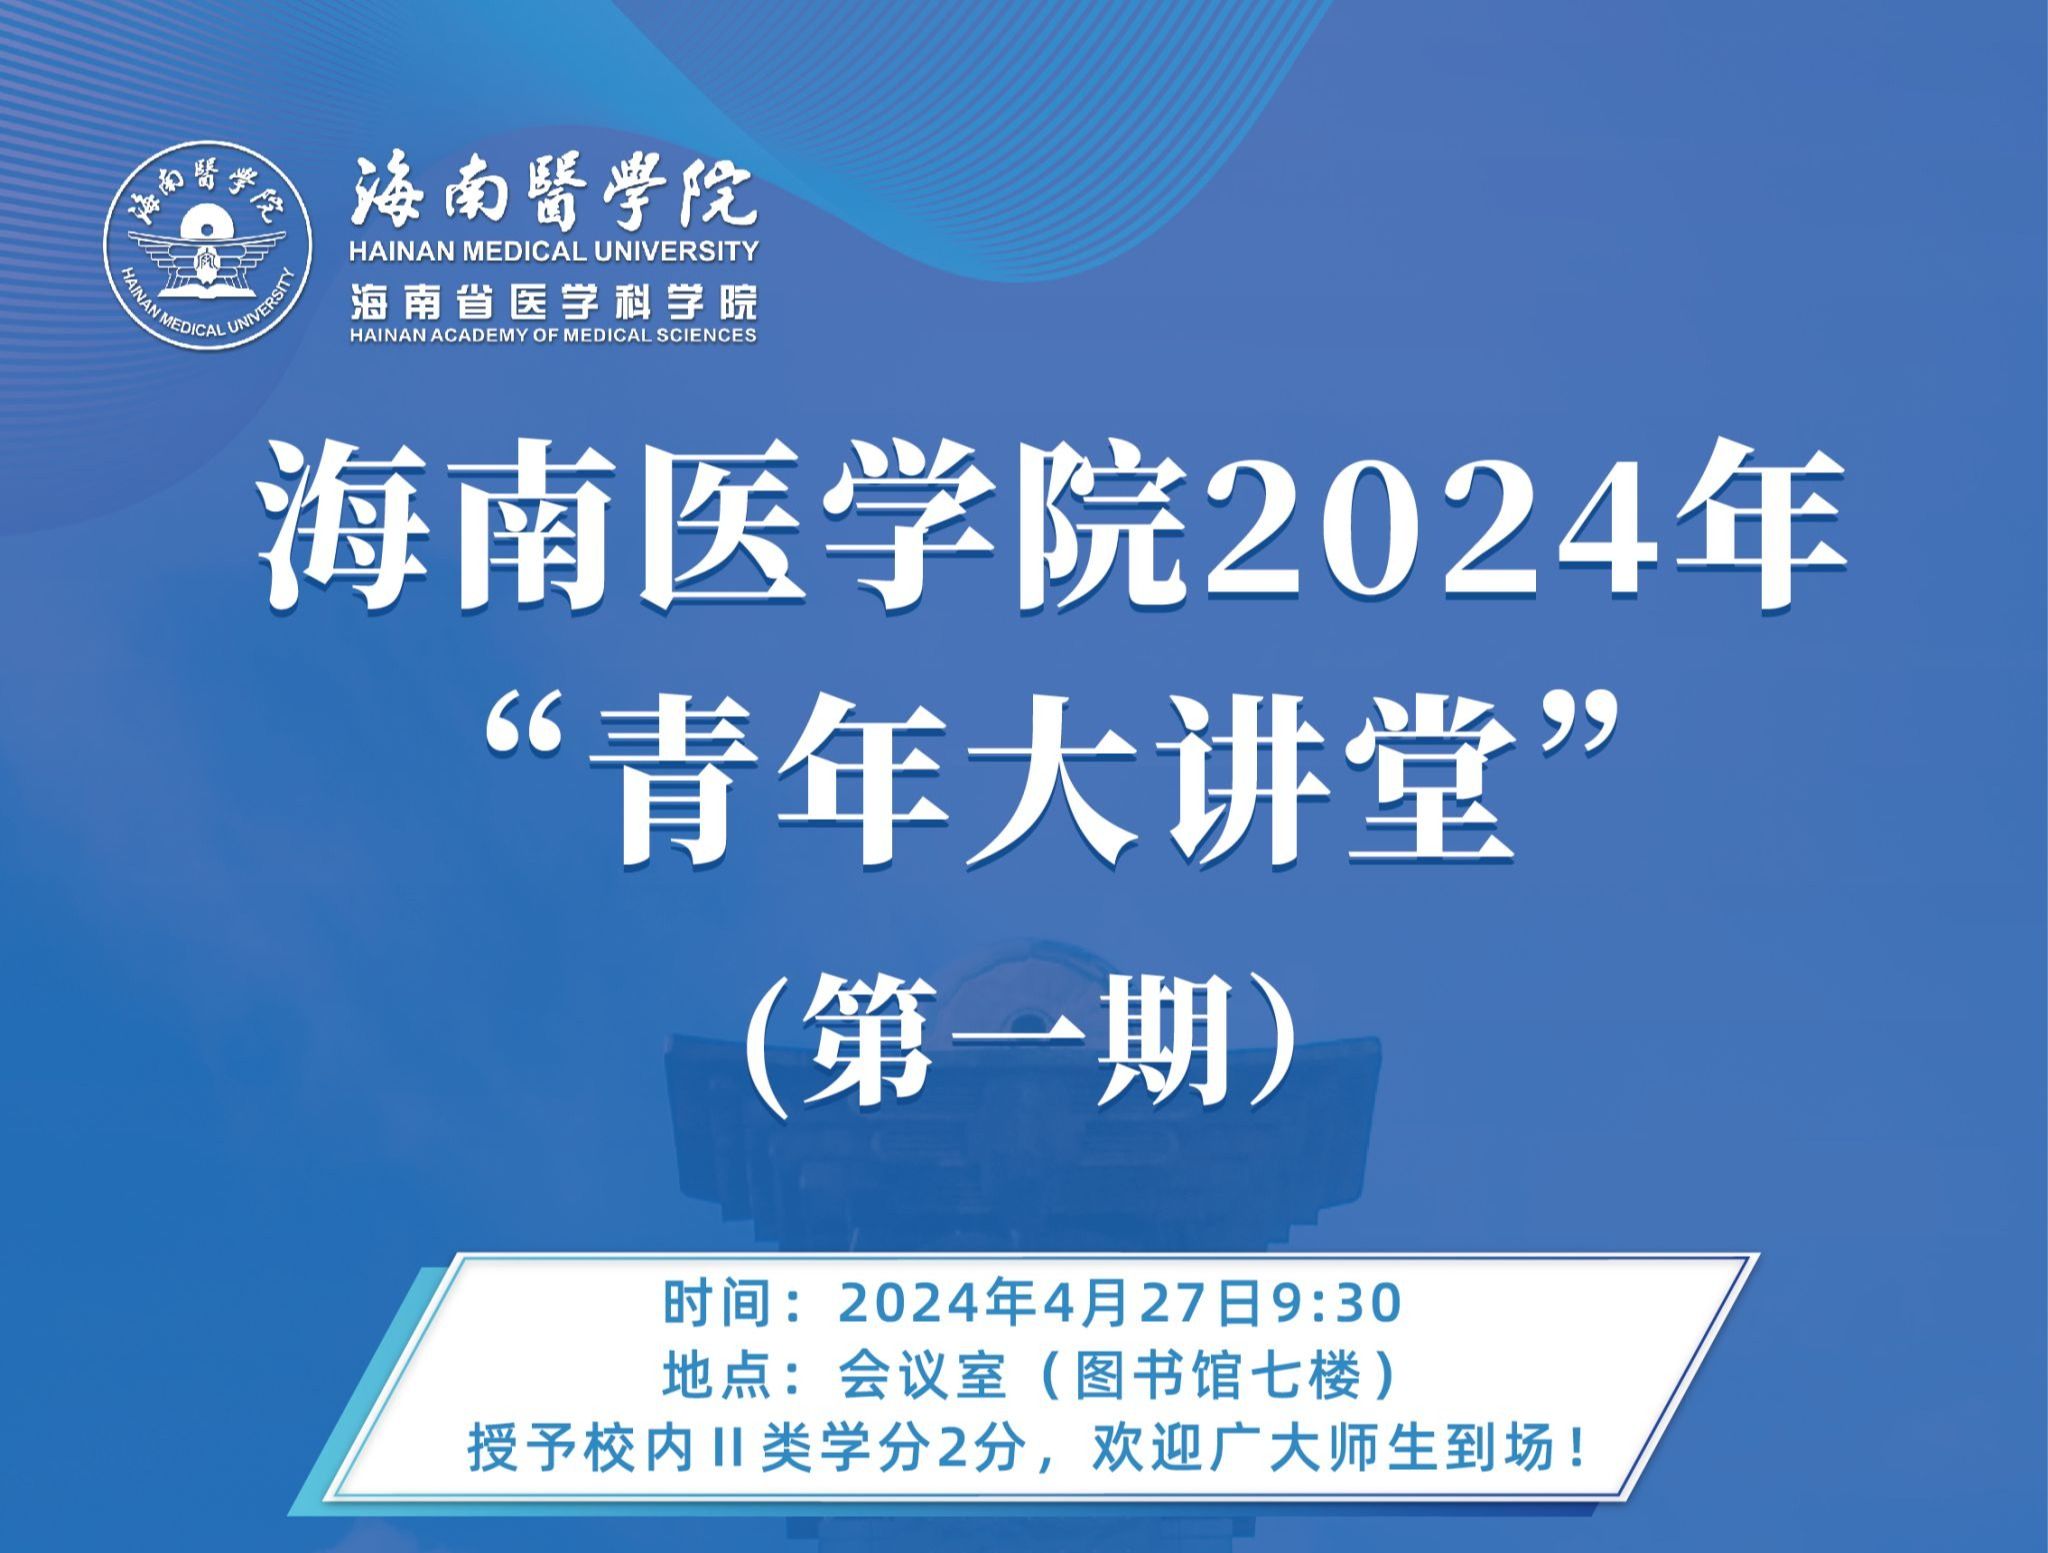 六合神算子传奇三肖2024年“青年大讲堂”第一期